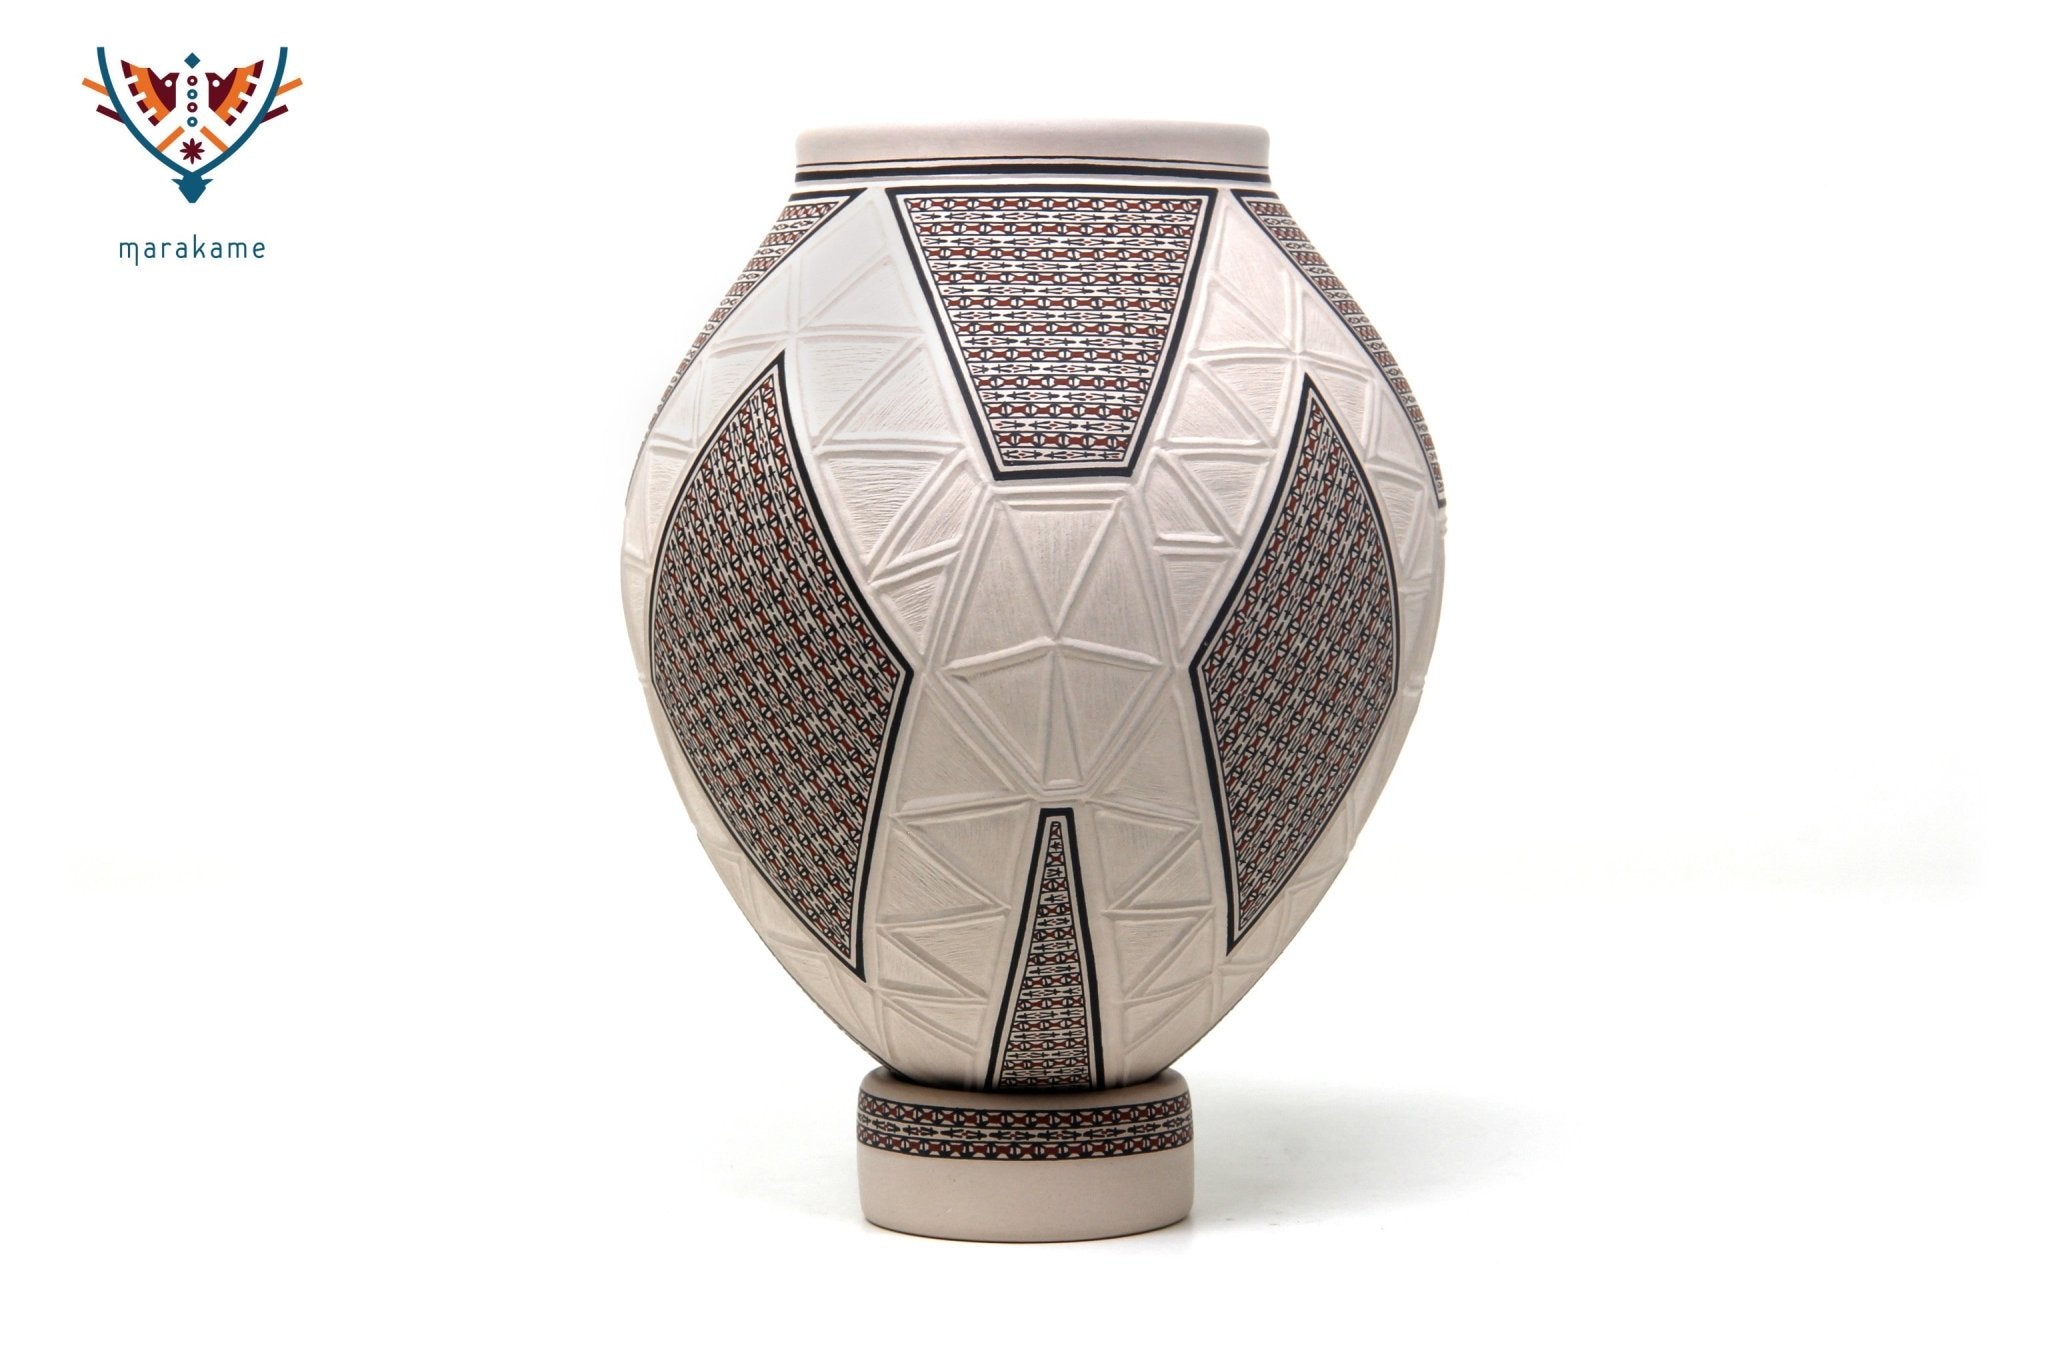 Keramik von Mata Ortiz - Feine Malerei und Sgraffito - Huichol-Kunst - Marakame